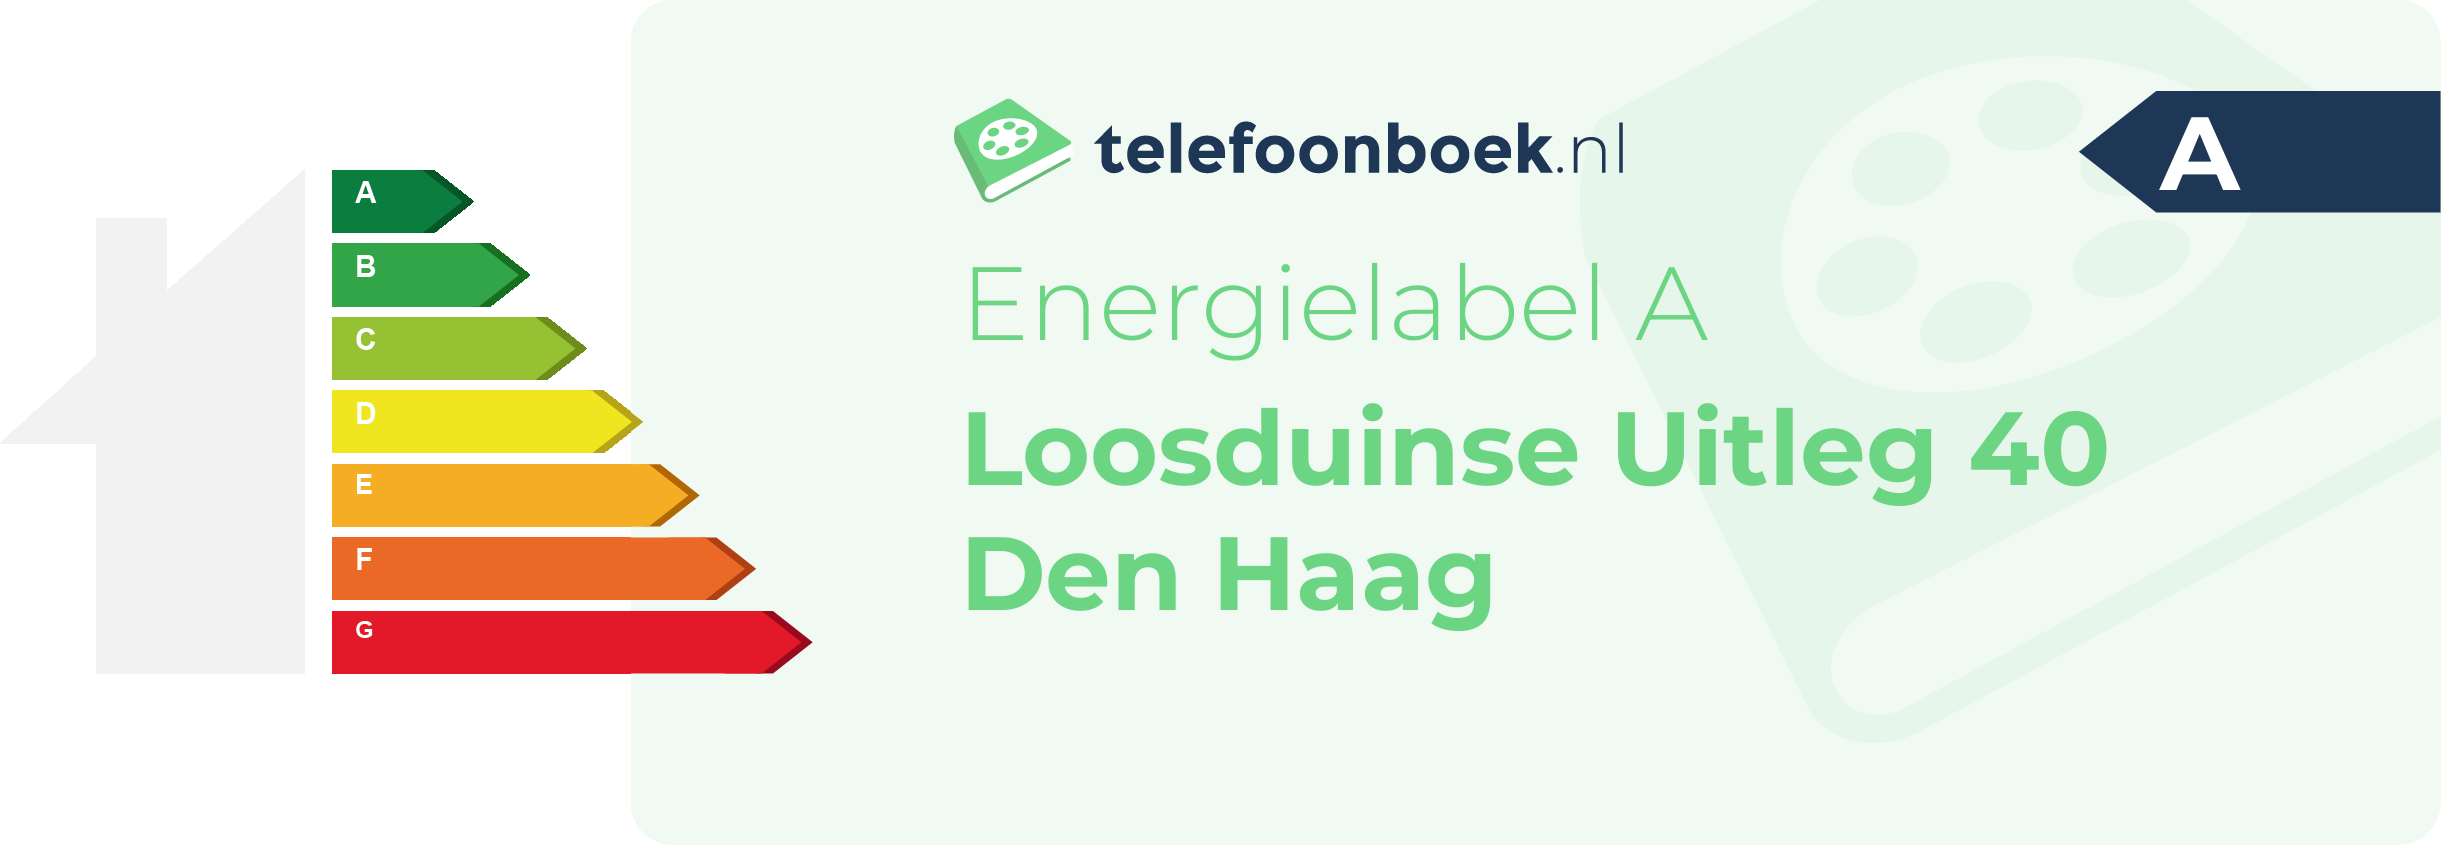 Energielabel Loosduinse Uitleg 40 Den Haag